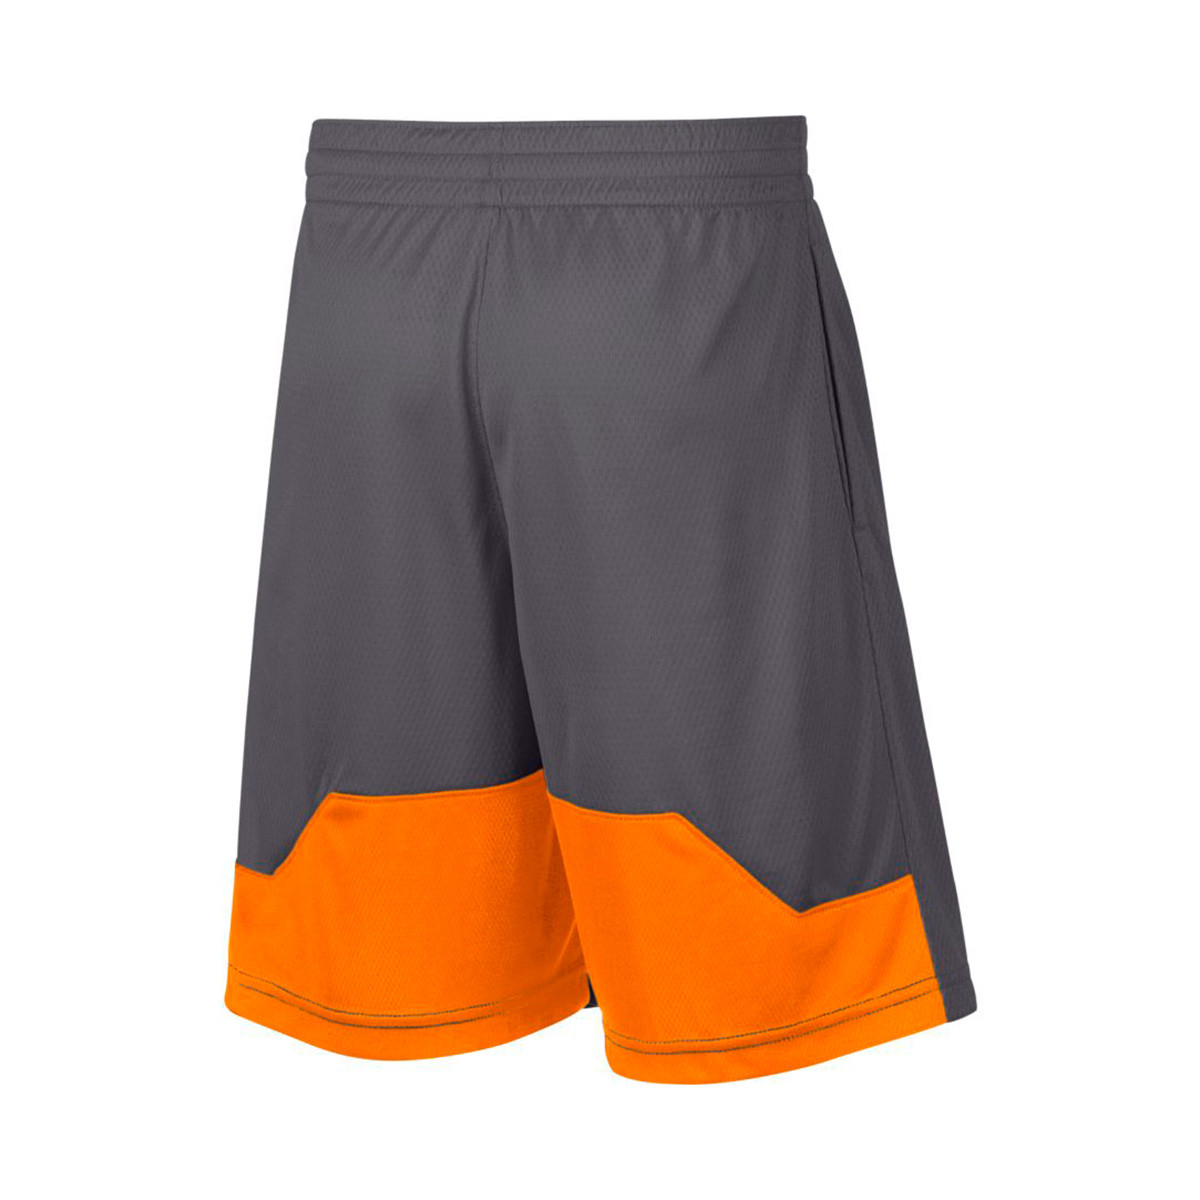 orange white and black nike shorts